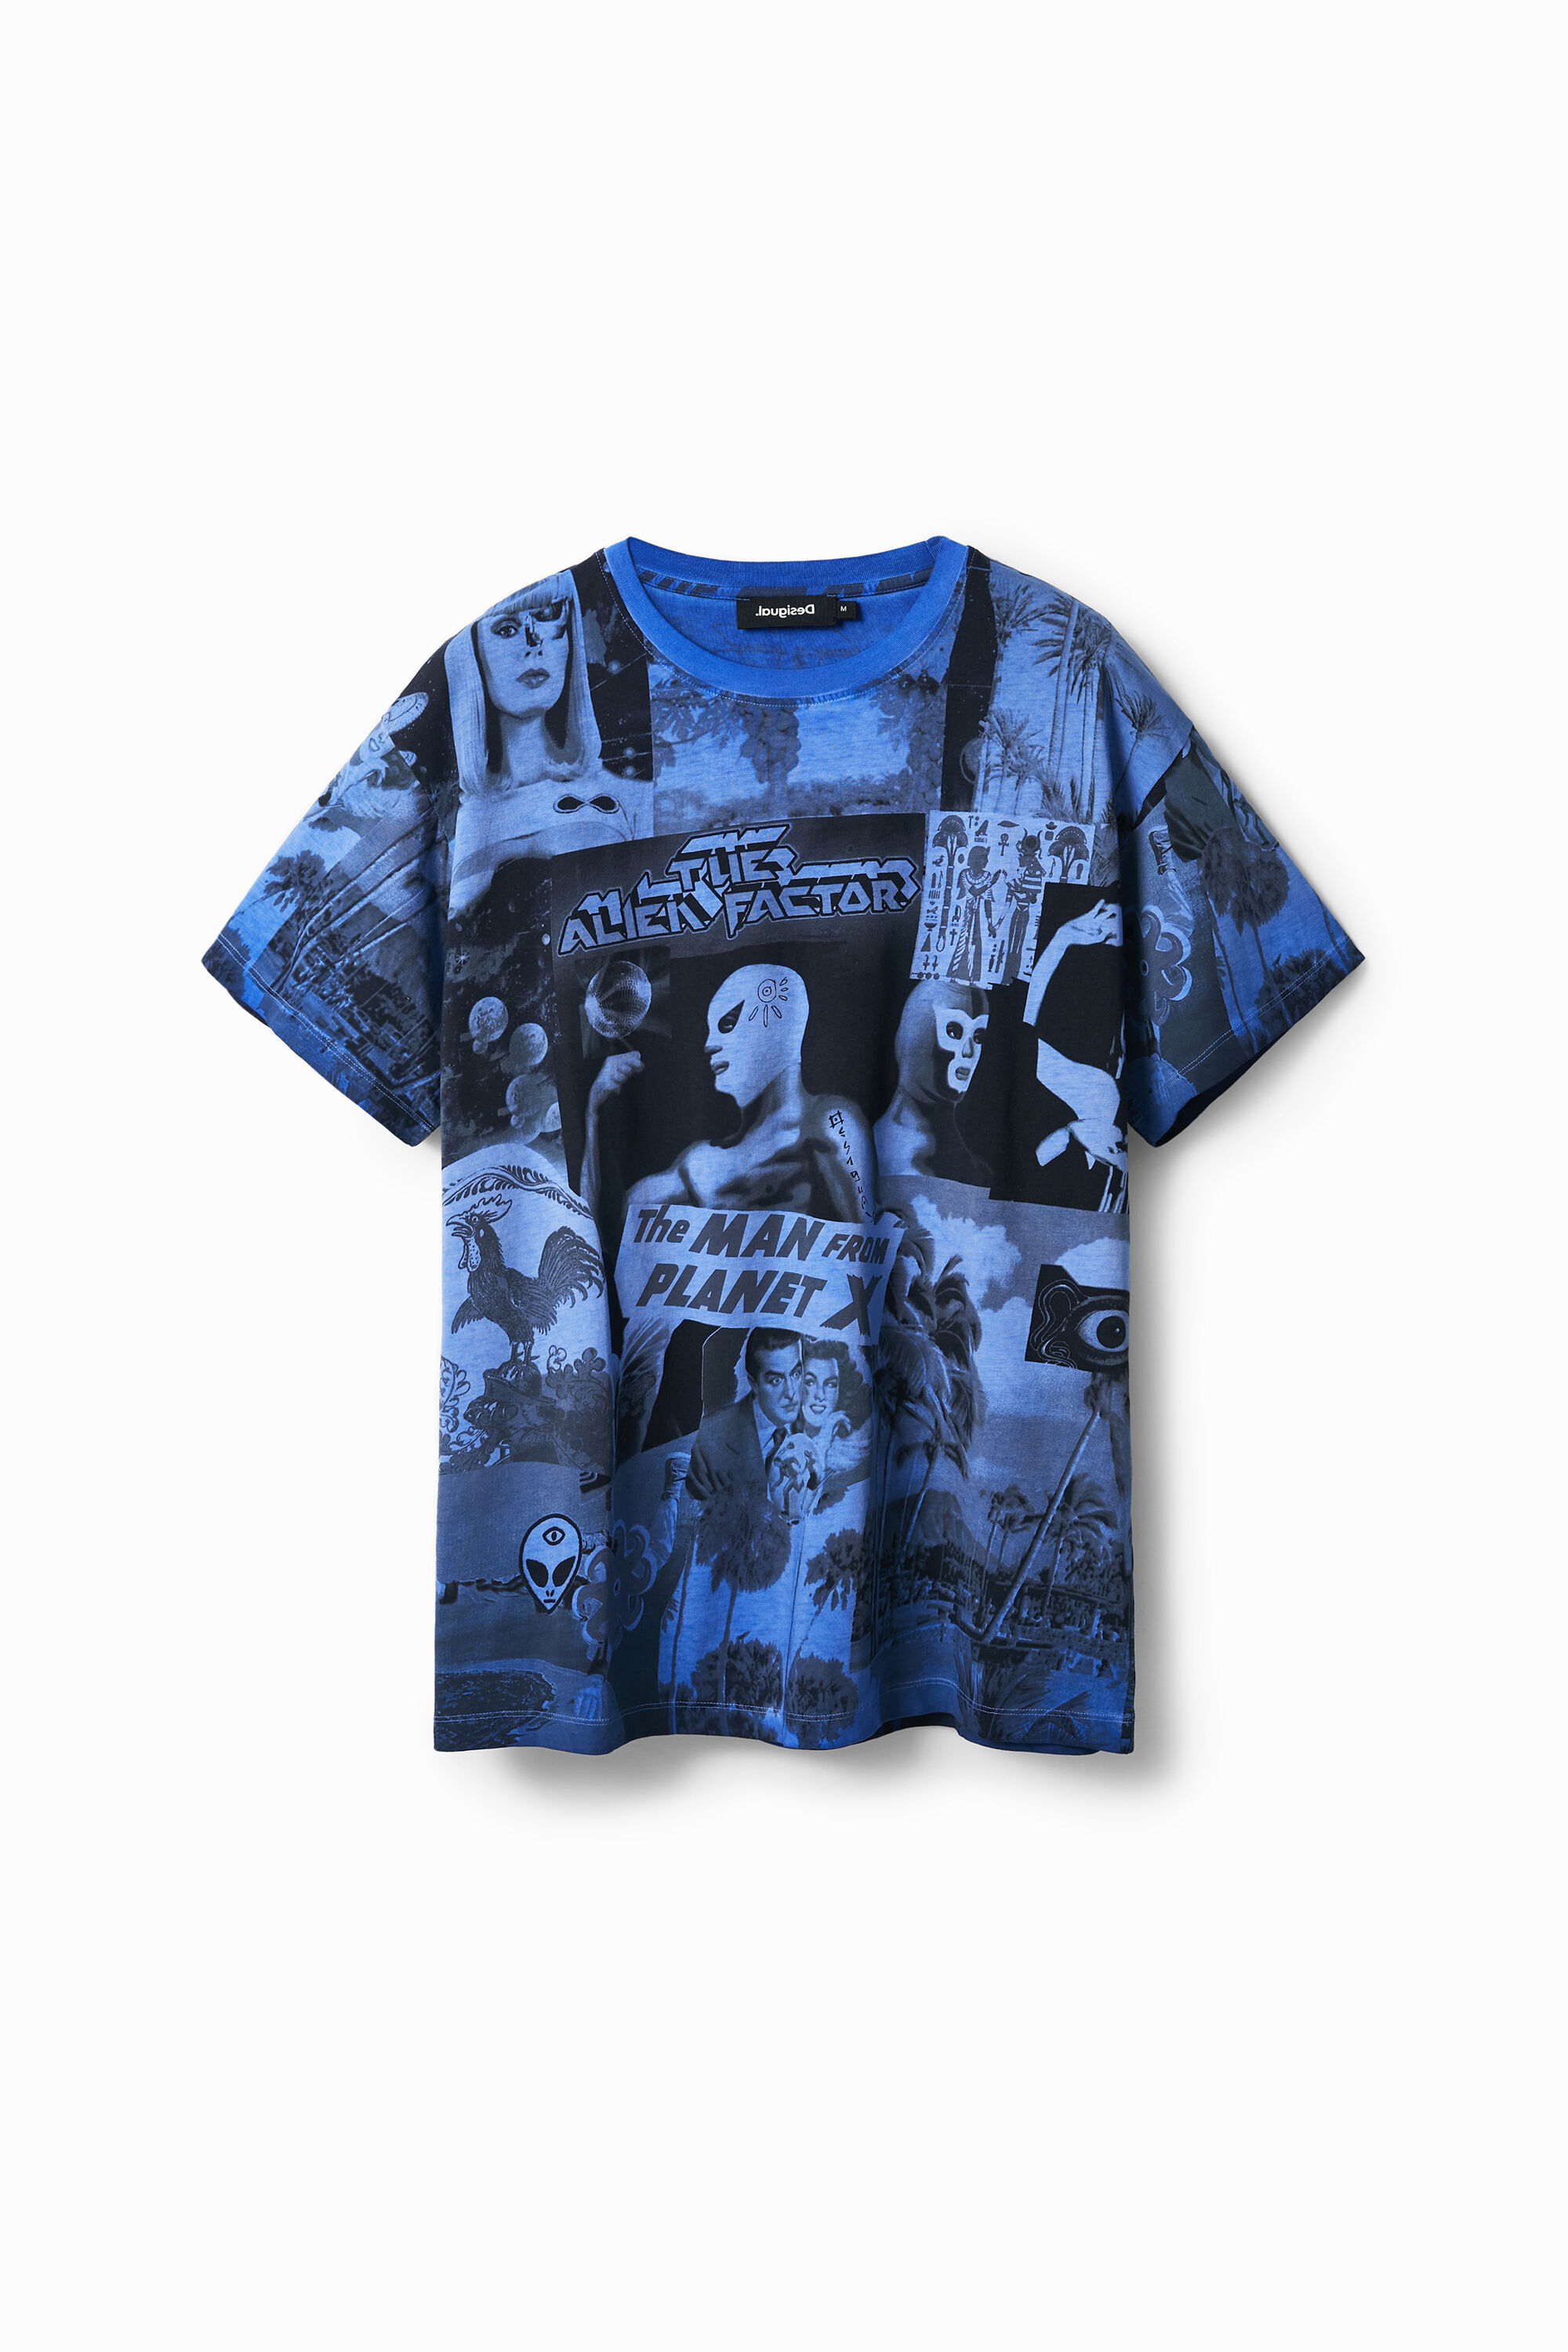 Alien collage T-shirt - BLUE - S